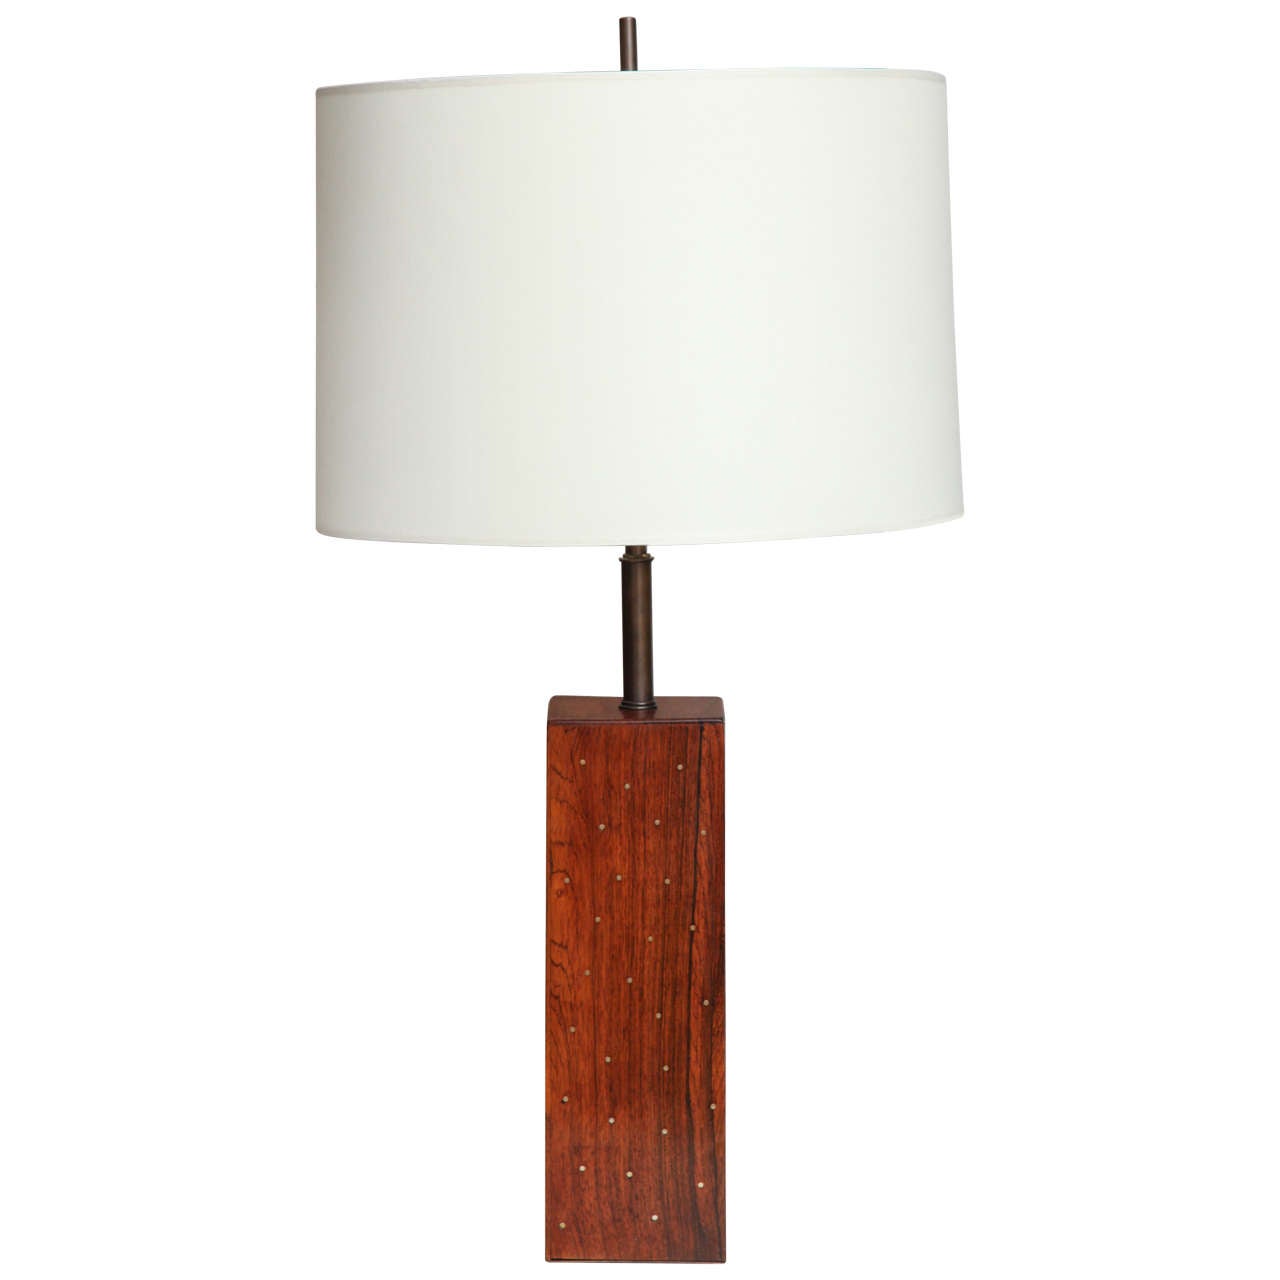 Rosewood Block Table Lamp